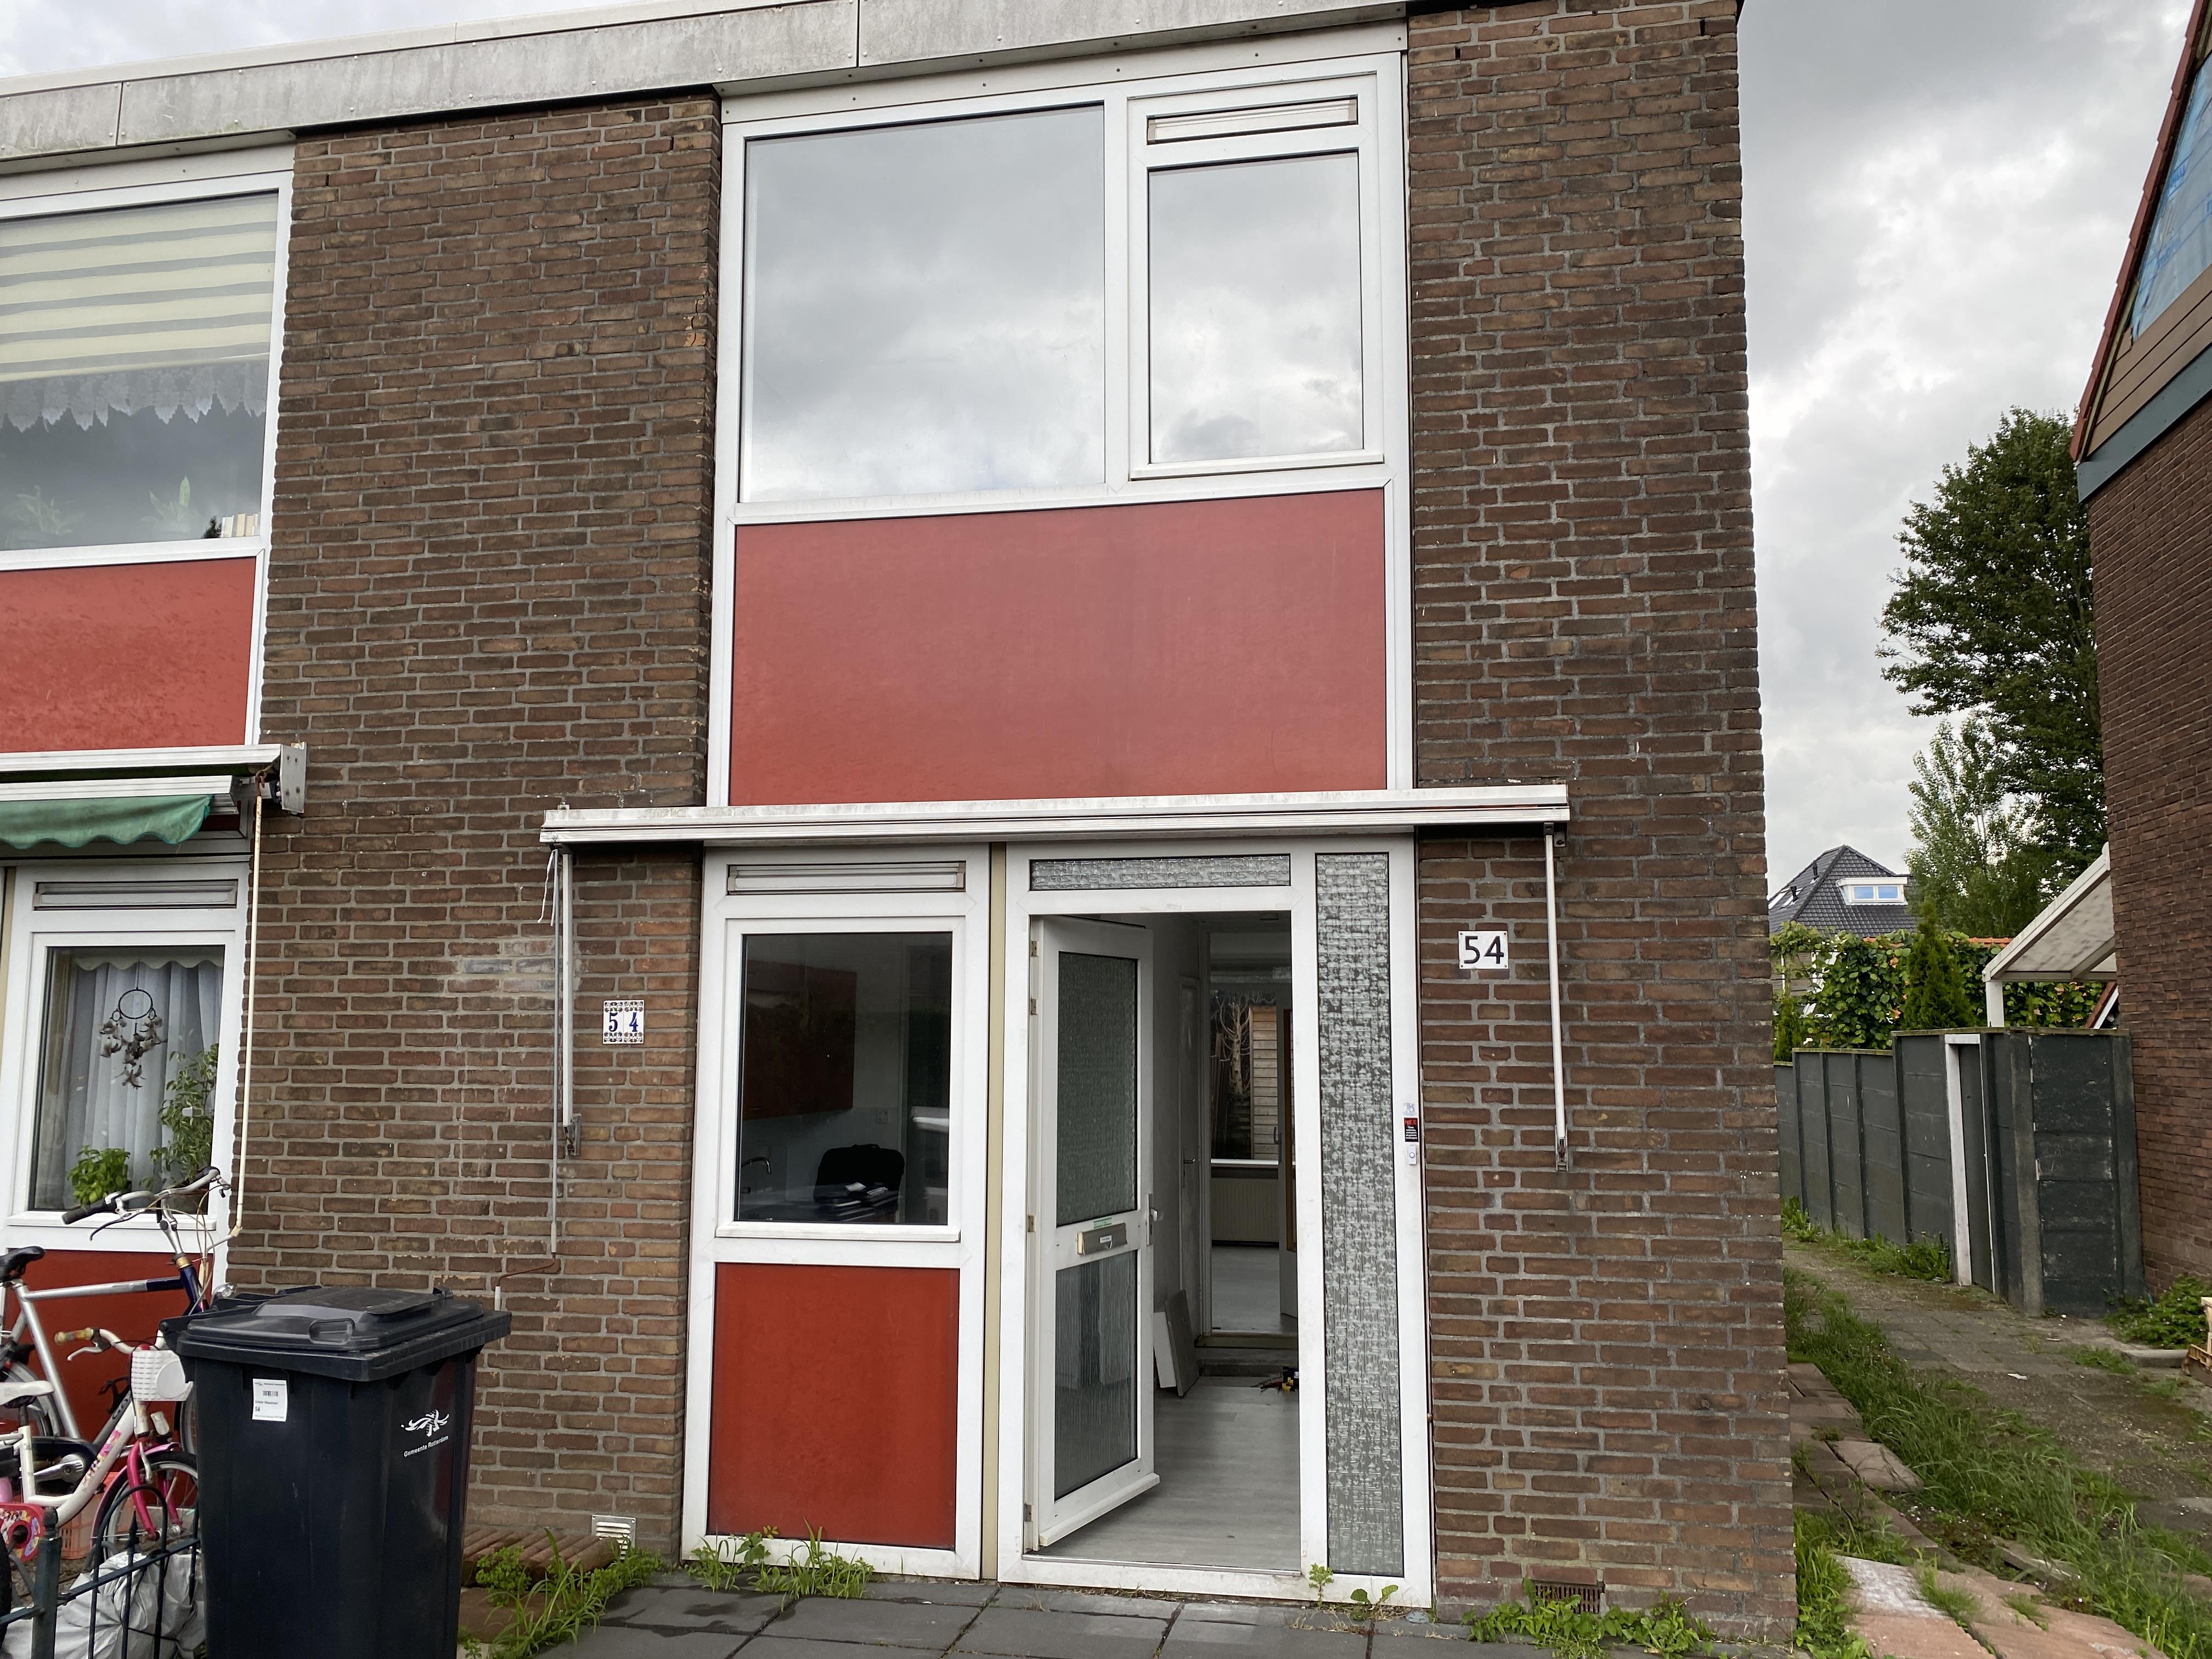 Dokter Wasstraat 54, 3195 BG Pernis, Nederland